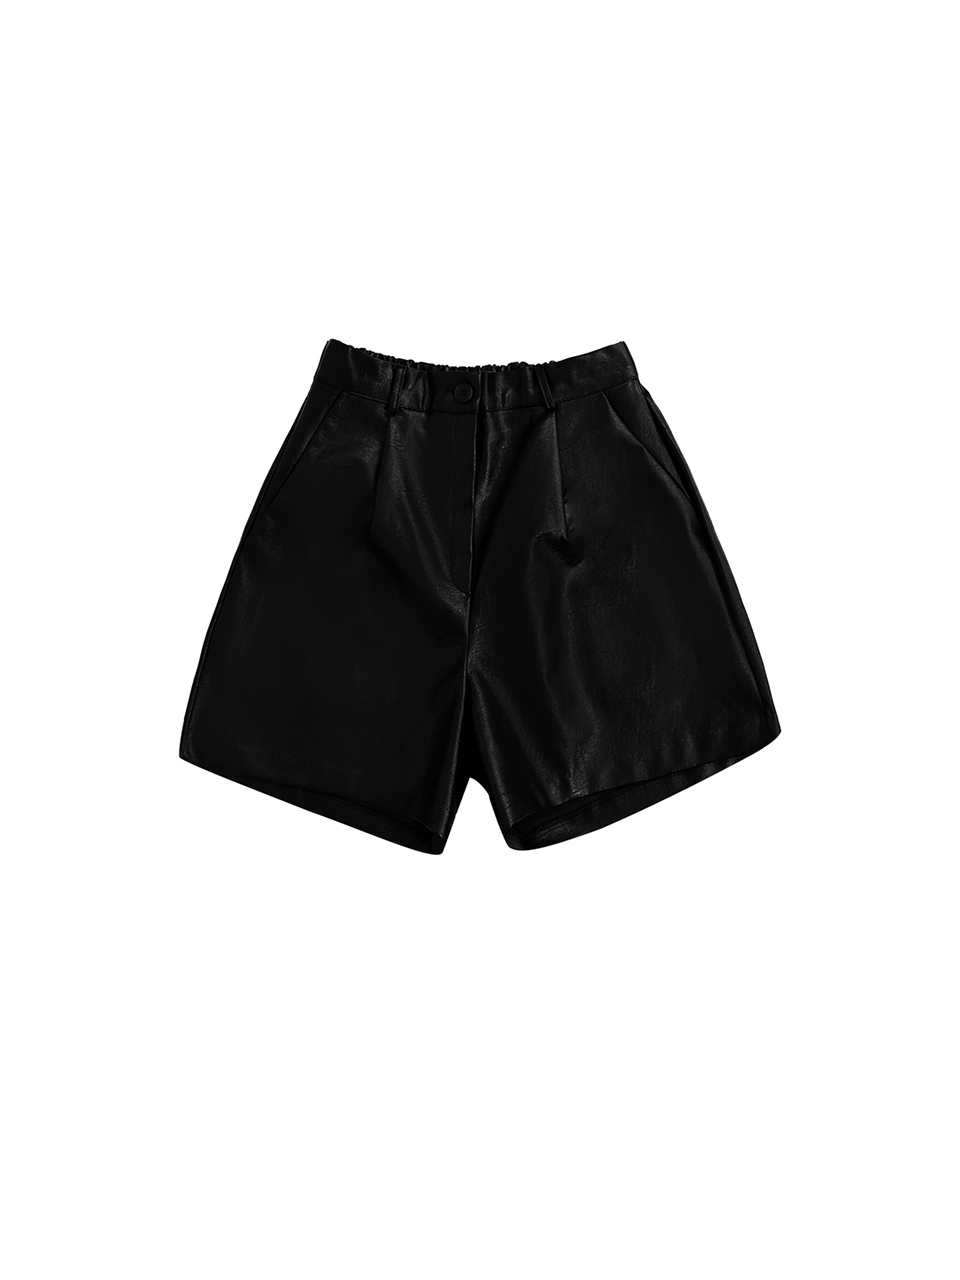 Milan Leather Shorts